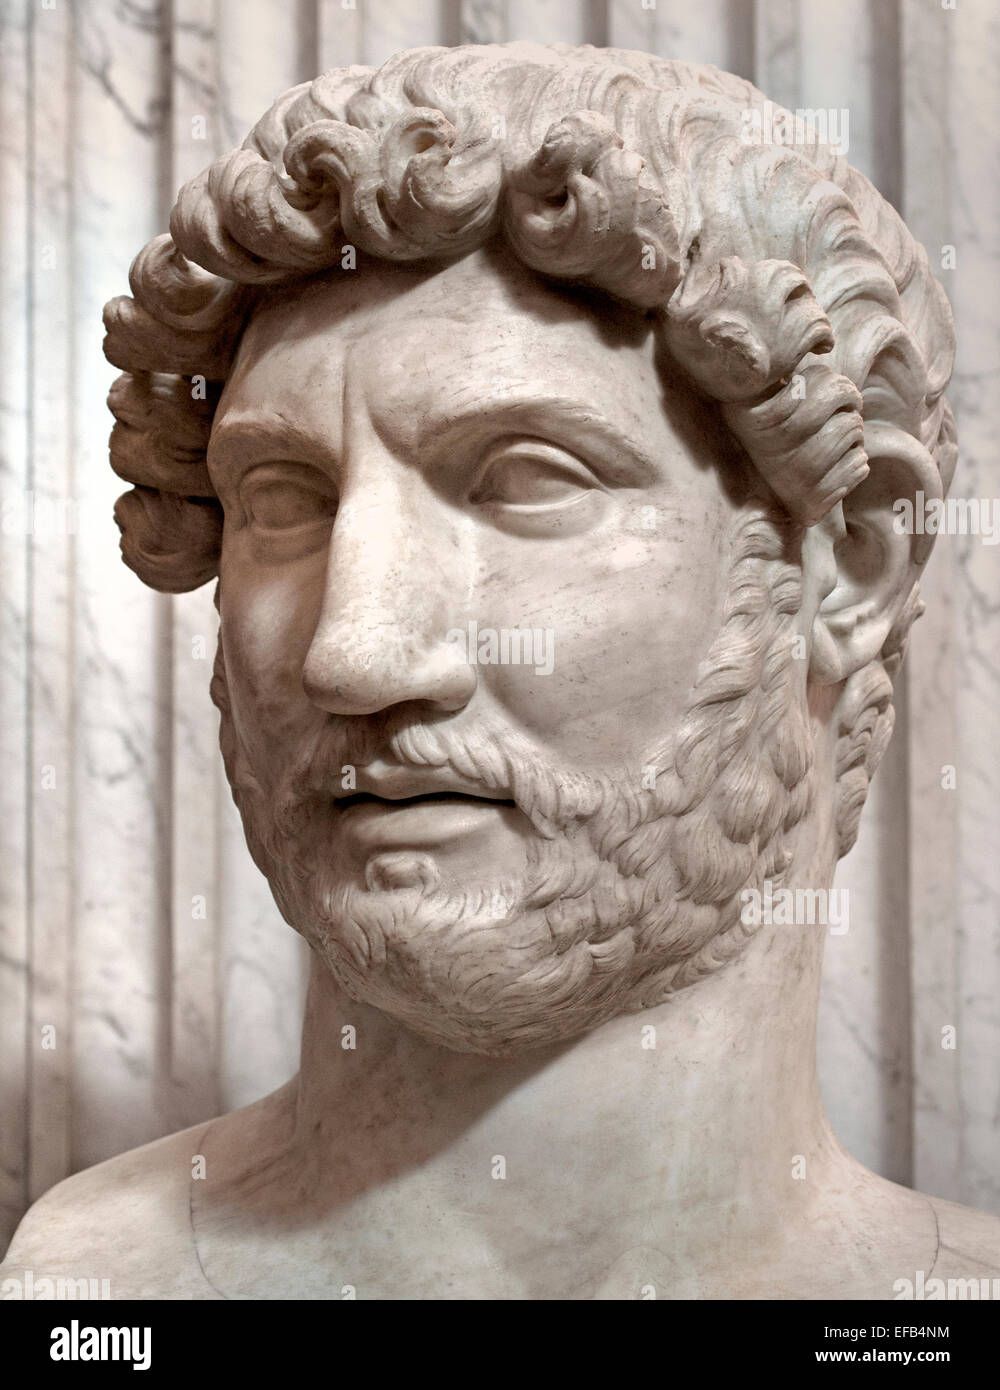 Busto del Emperador Adriano, del Mausoleo de Adriano, posiblemente creado a raíz de la muerte del emperador en el 138 AD ( Museo Vaticano Roma Italia ) Foto de stock